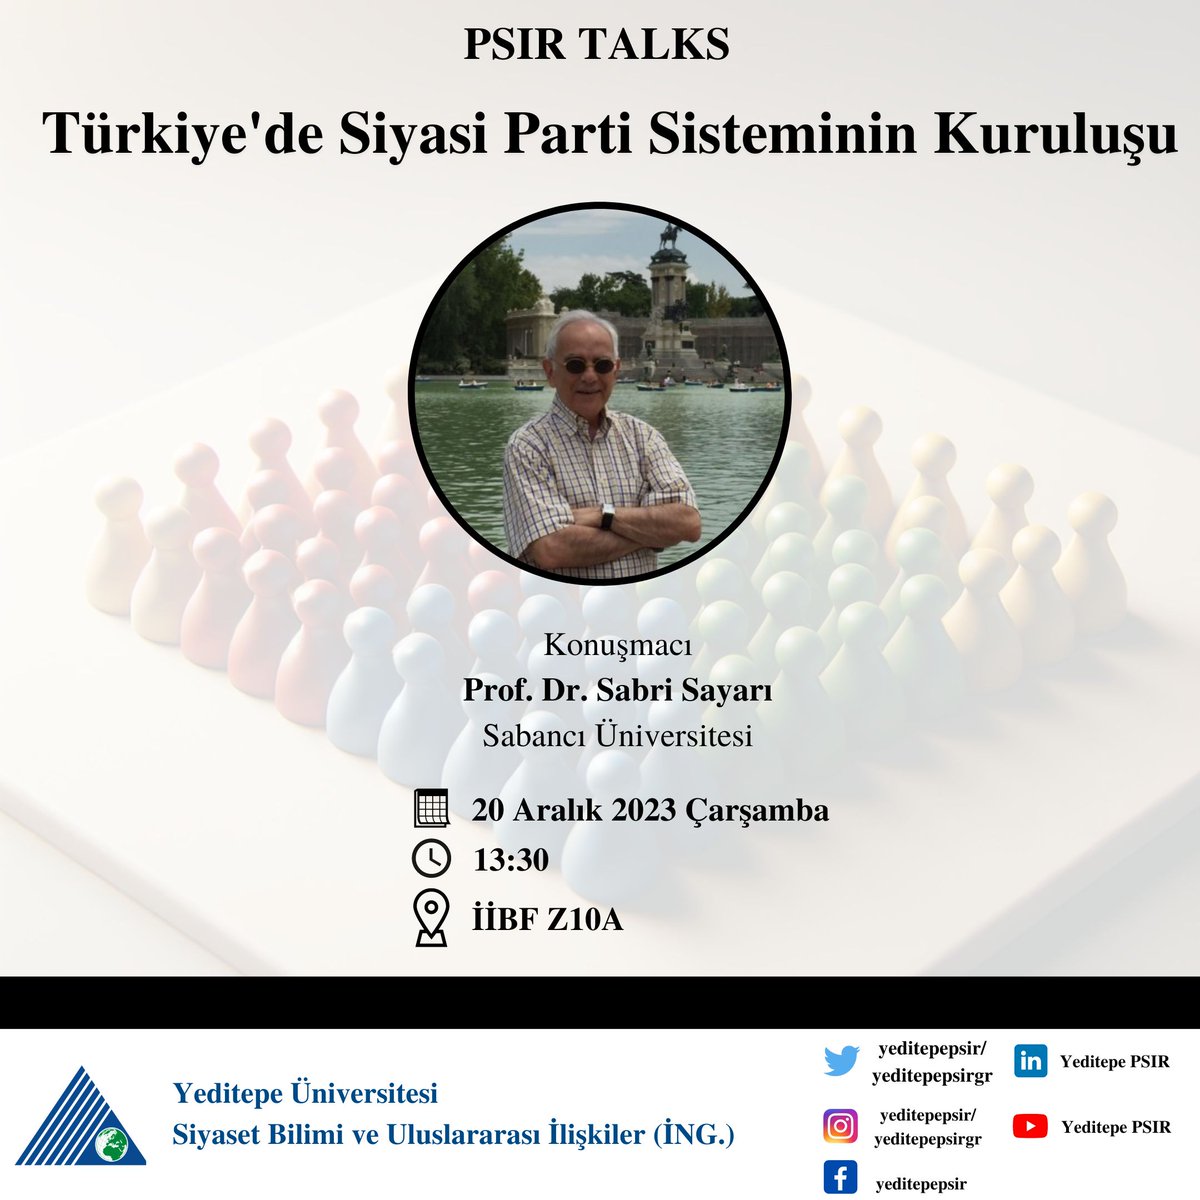 'Türkiye'de Siyasi Parti Sisteminin Kuruluşu' başlıklı konuşmasıyla Prof. Dr. Sabri Sayarı bizlerle olacak. Tüm mensup ve öğrencilerimizi bekliyoruz.

@YeditepeUni 
@YeditepePSIRGr 
@yeditepesbe 
@yeditepeiibf 
#yeditepepsır